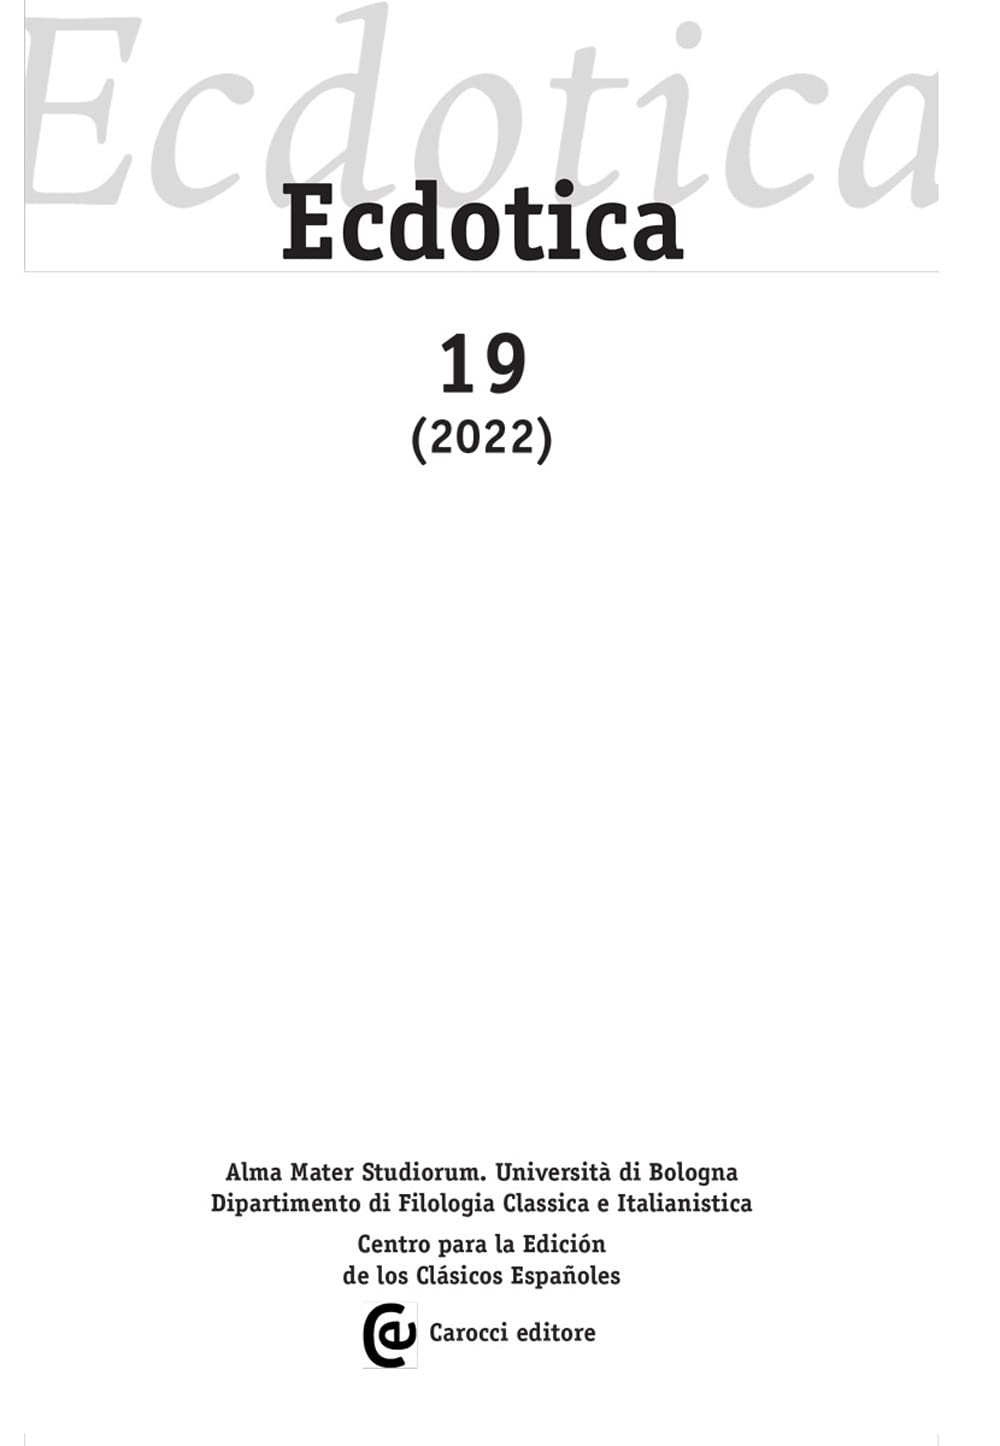 Libri Ecdotica (2022) Vol 19 NUOVO SIGILLATO, EDIZIONE DEL 09/10/2023 SUBITO DISPONIBILE